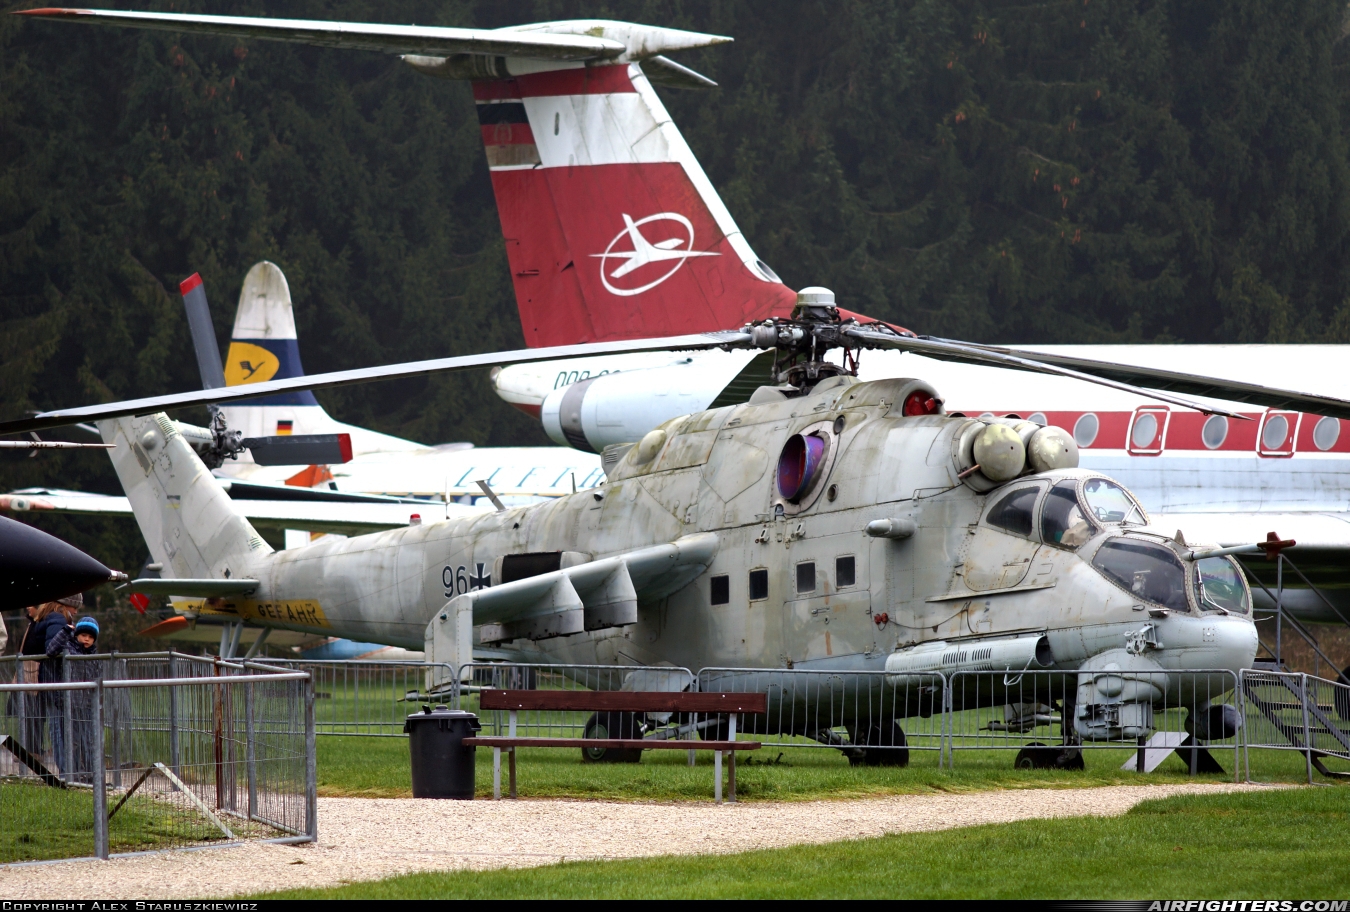 Germany - Army Mil Mi-24P 96+50 at Off-Airport - Hermeskeil, Germany